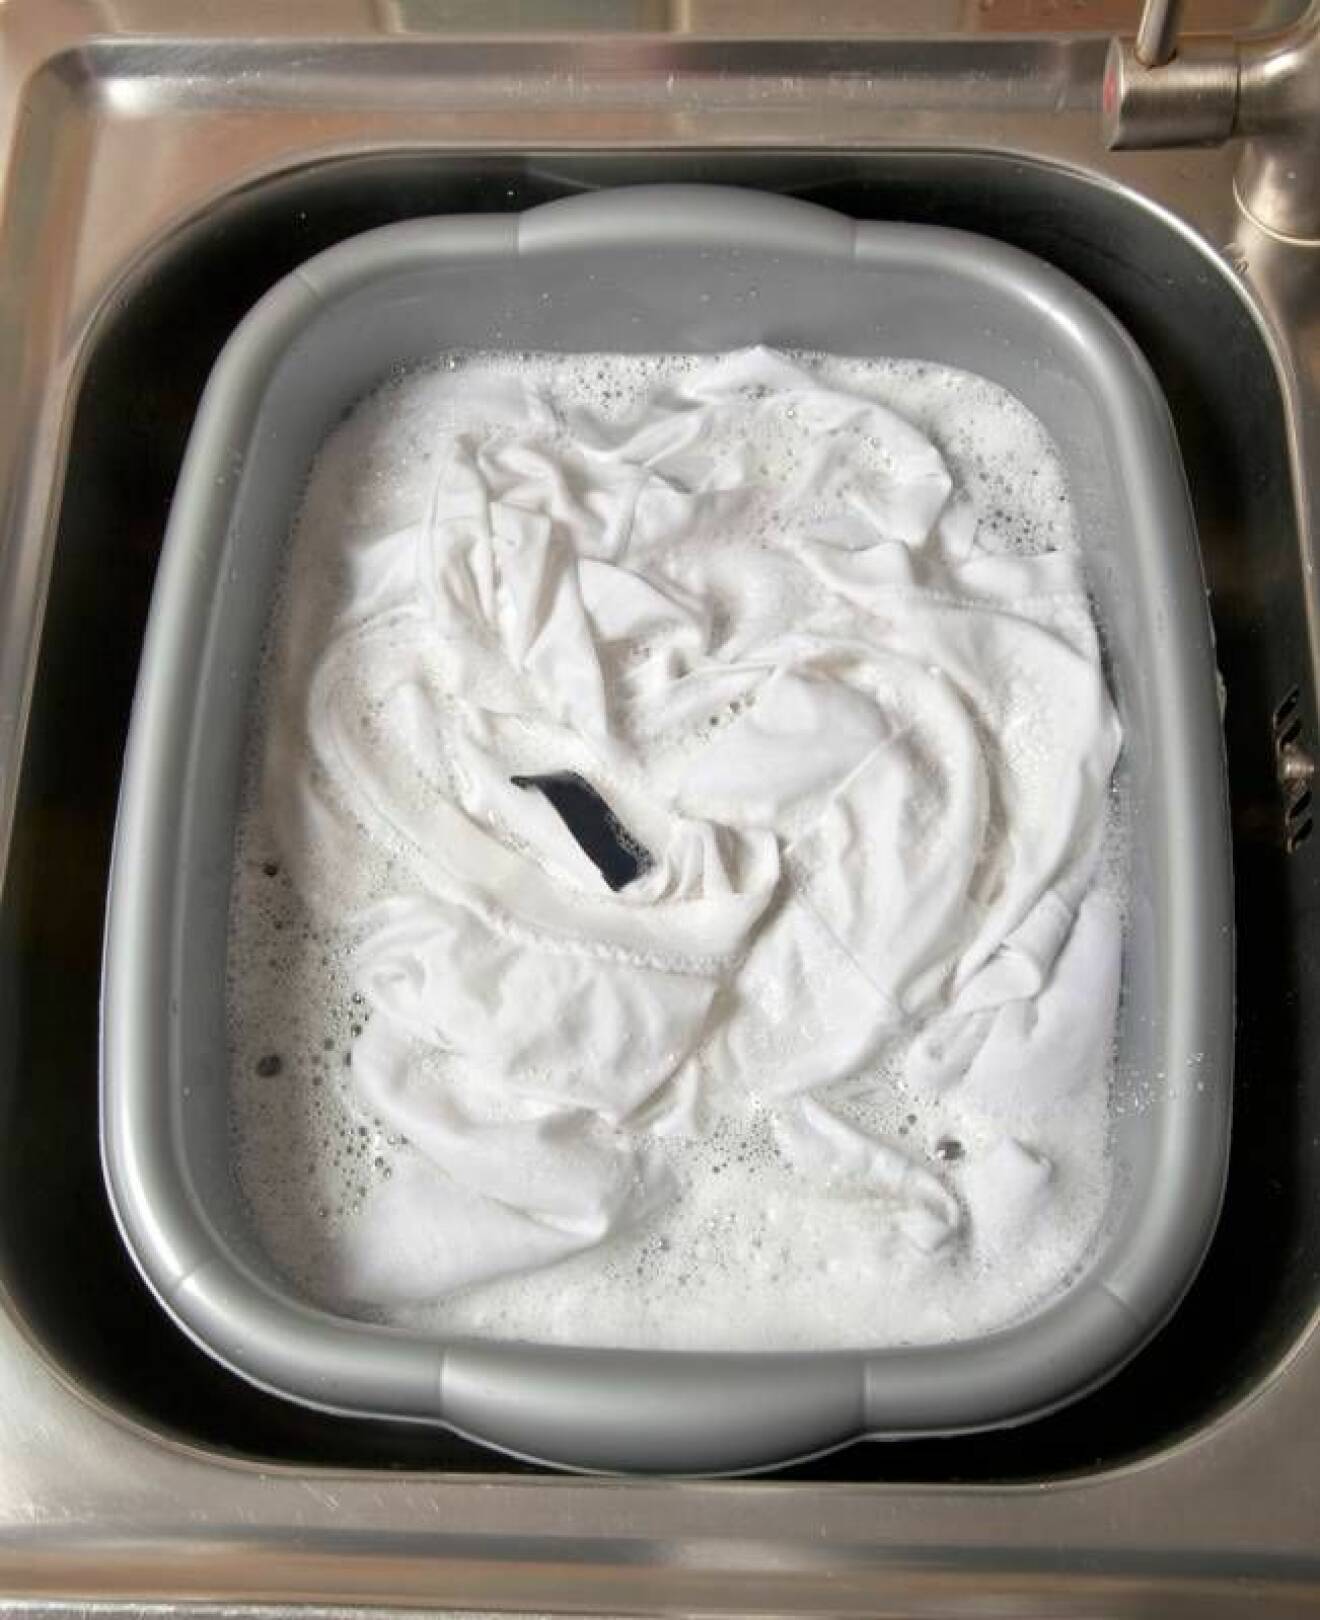 Vita klädesplagg bleks i en balja i vasken